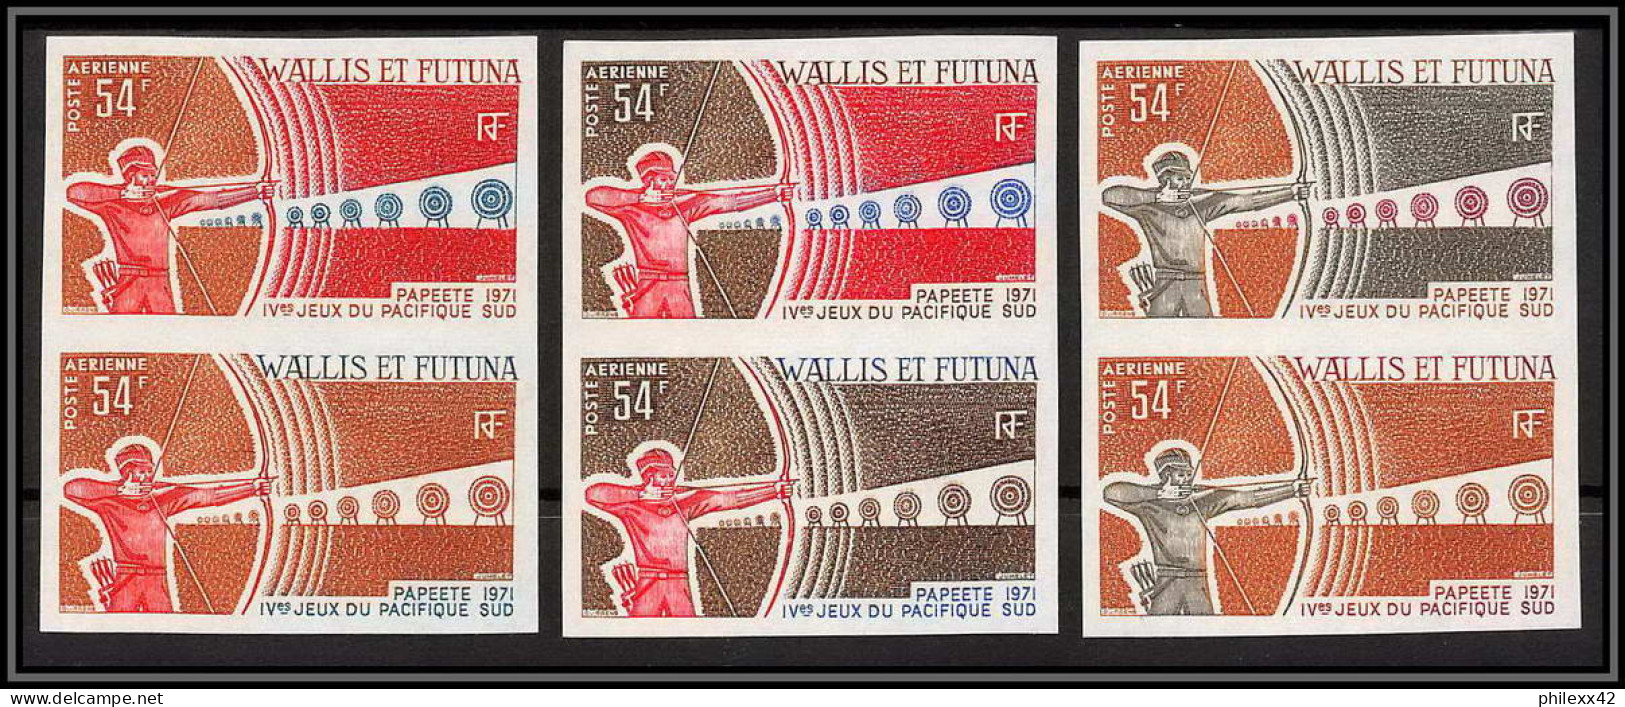 92552a Wallis Et Futuna PA N°40 Tir à L'arc Archery Jeux Du Pacific 1971 Lot 6 Essais Proof Non Dentelé Imperf ** MNH - Tir à L'Arc